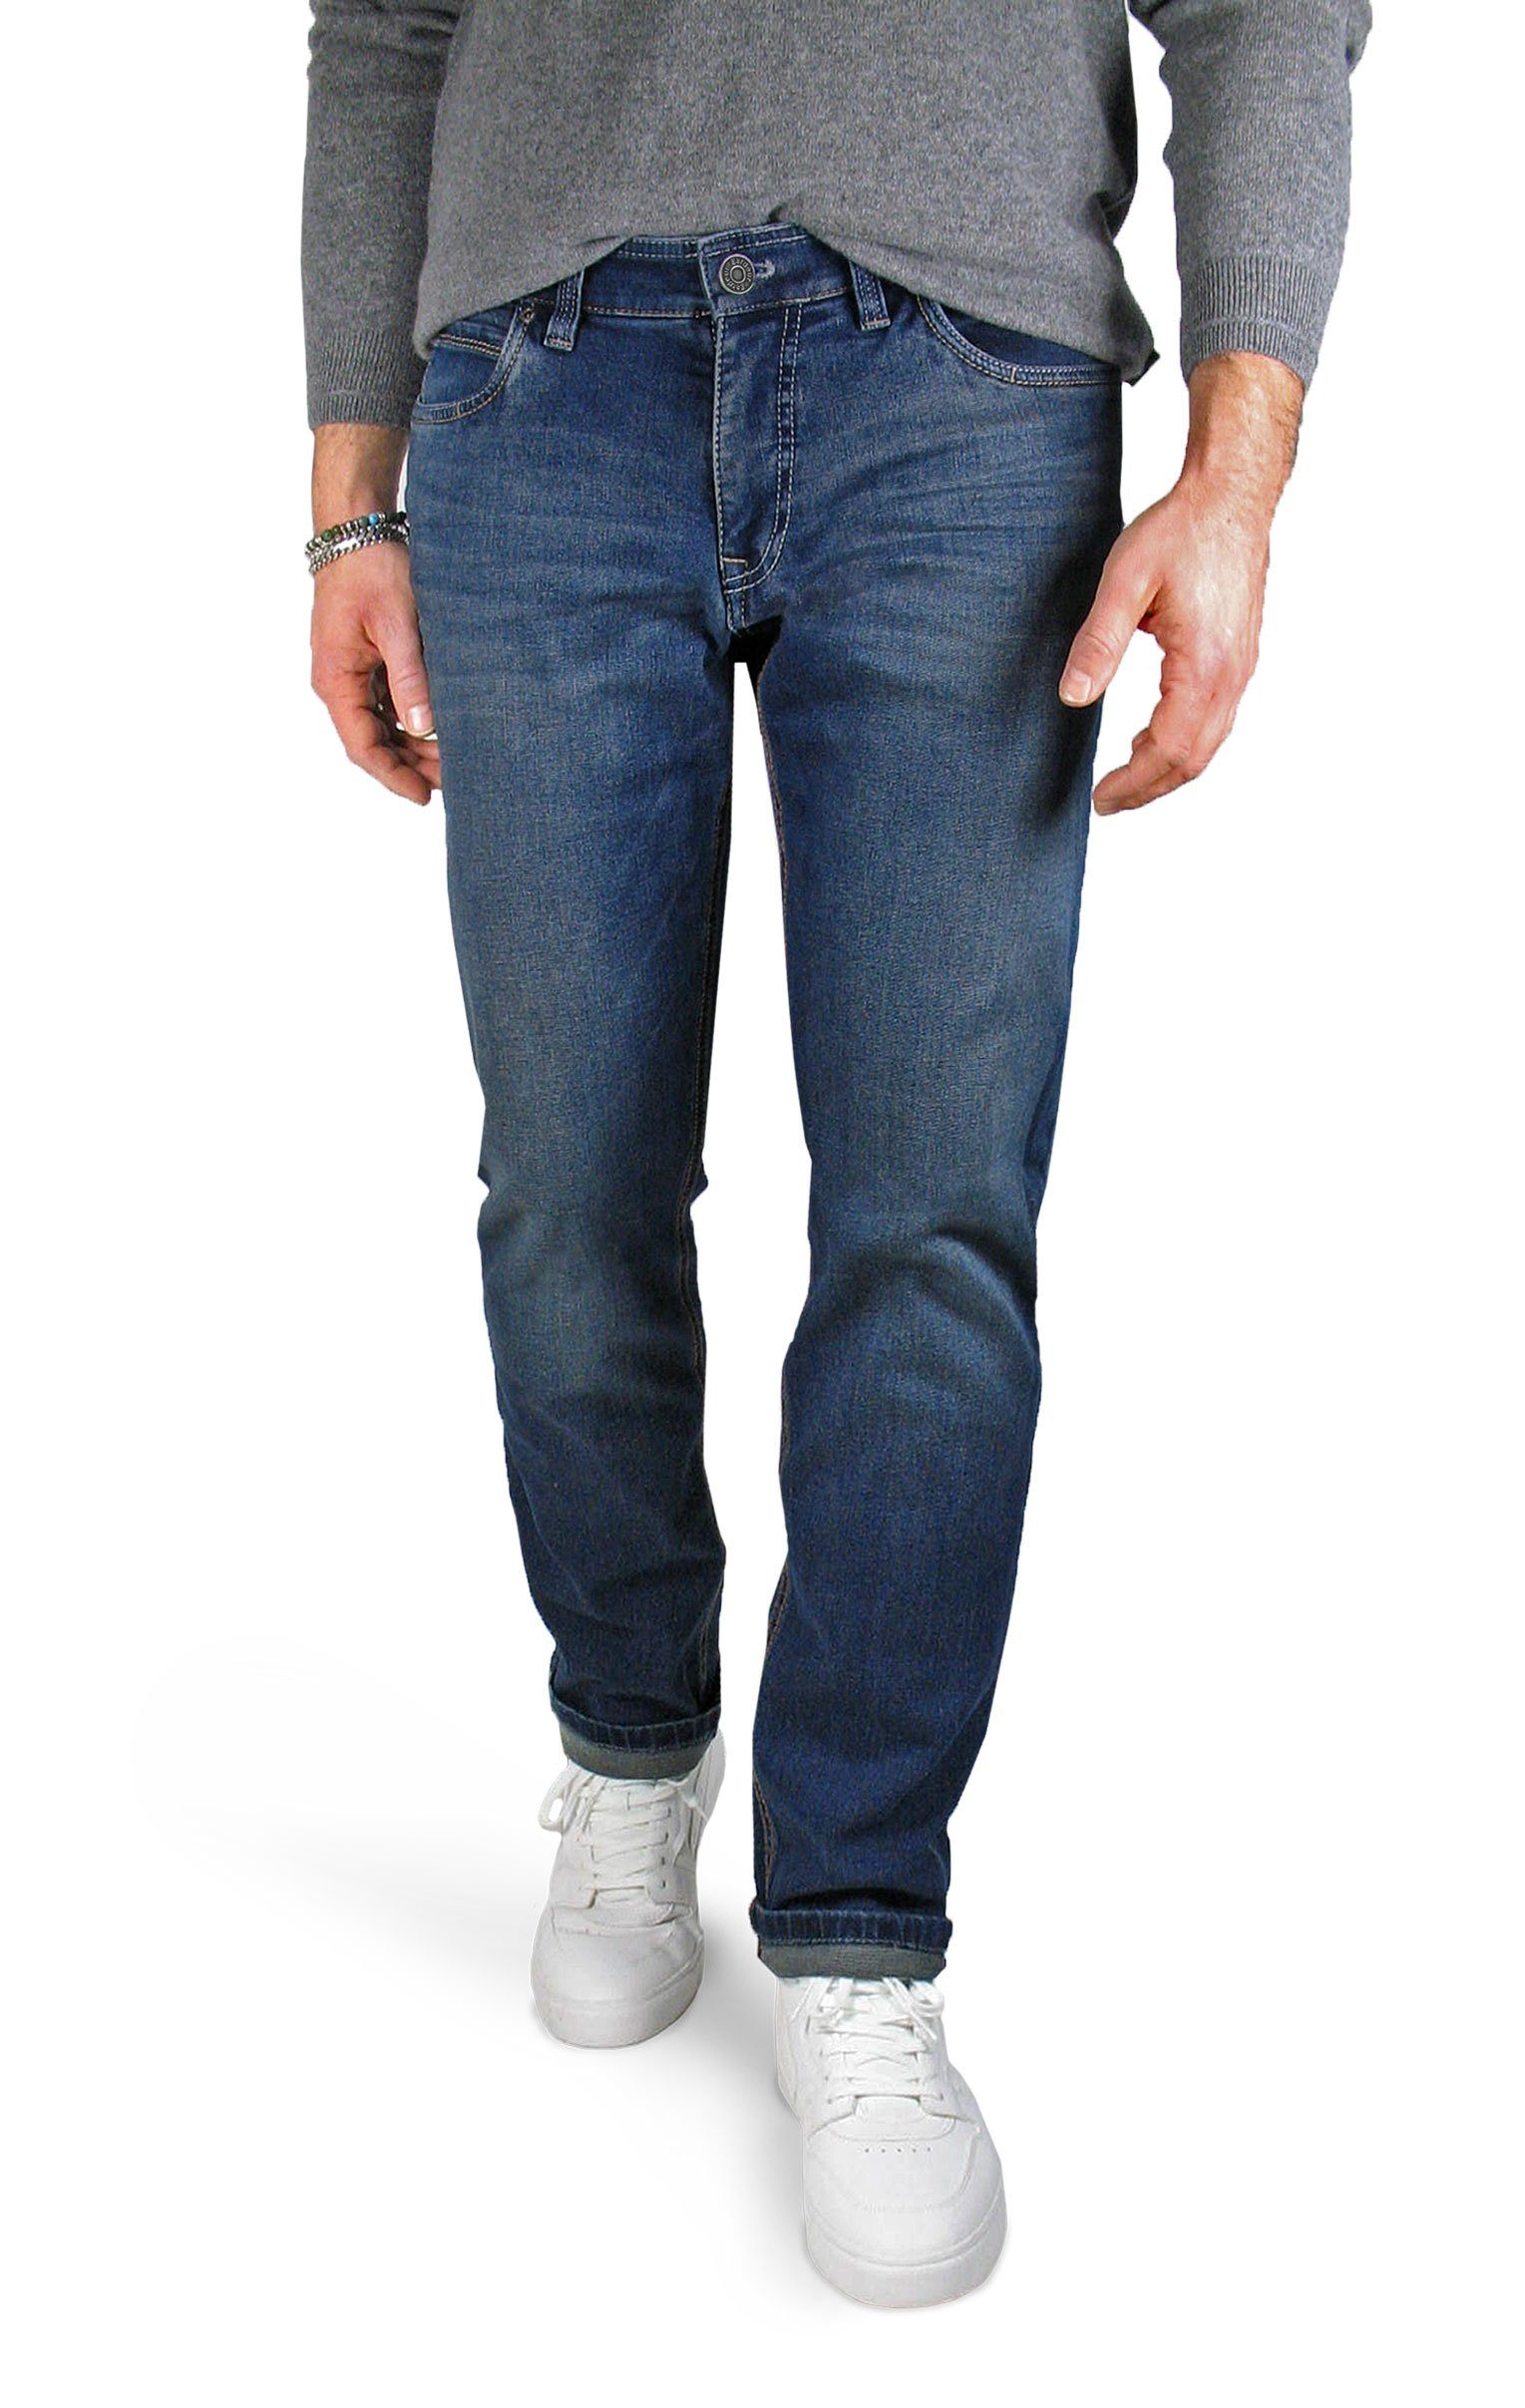 Atelier GARDEUR 5-Pocket-Jeans Batu-2 Superflex Denim 68 vintage blue | Straight-Fit Jeans